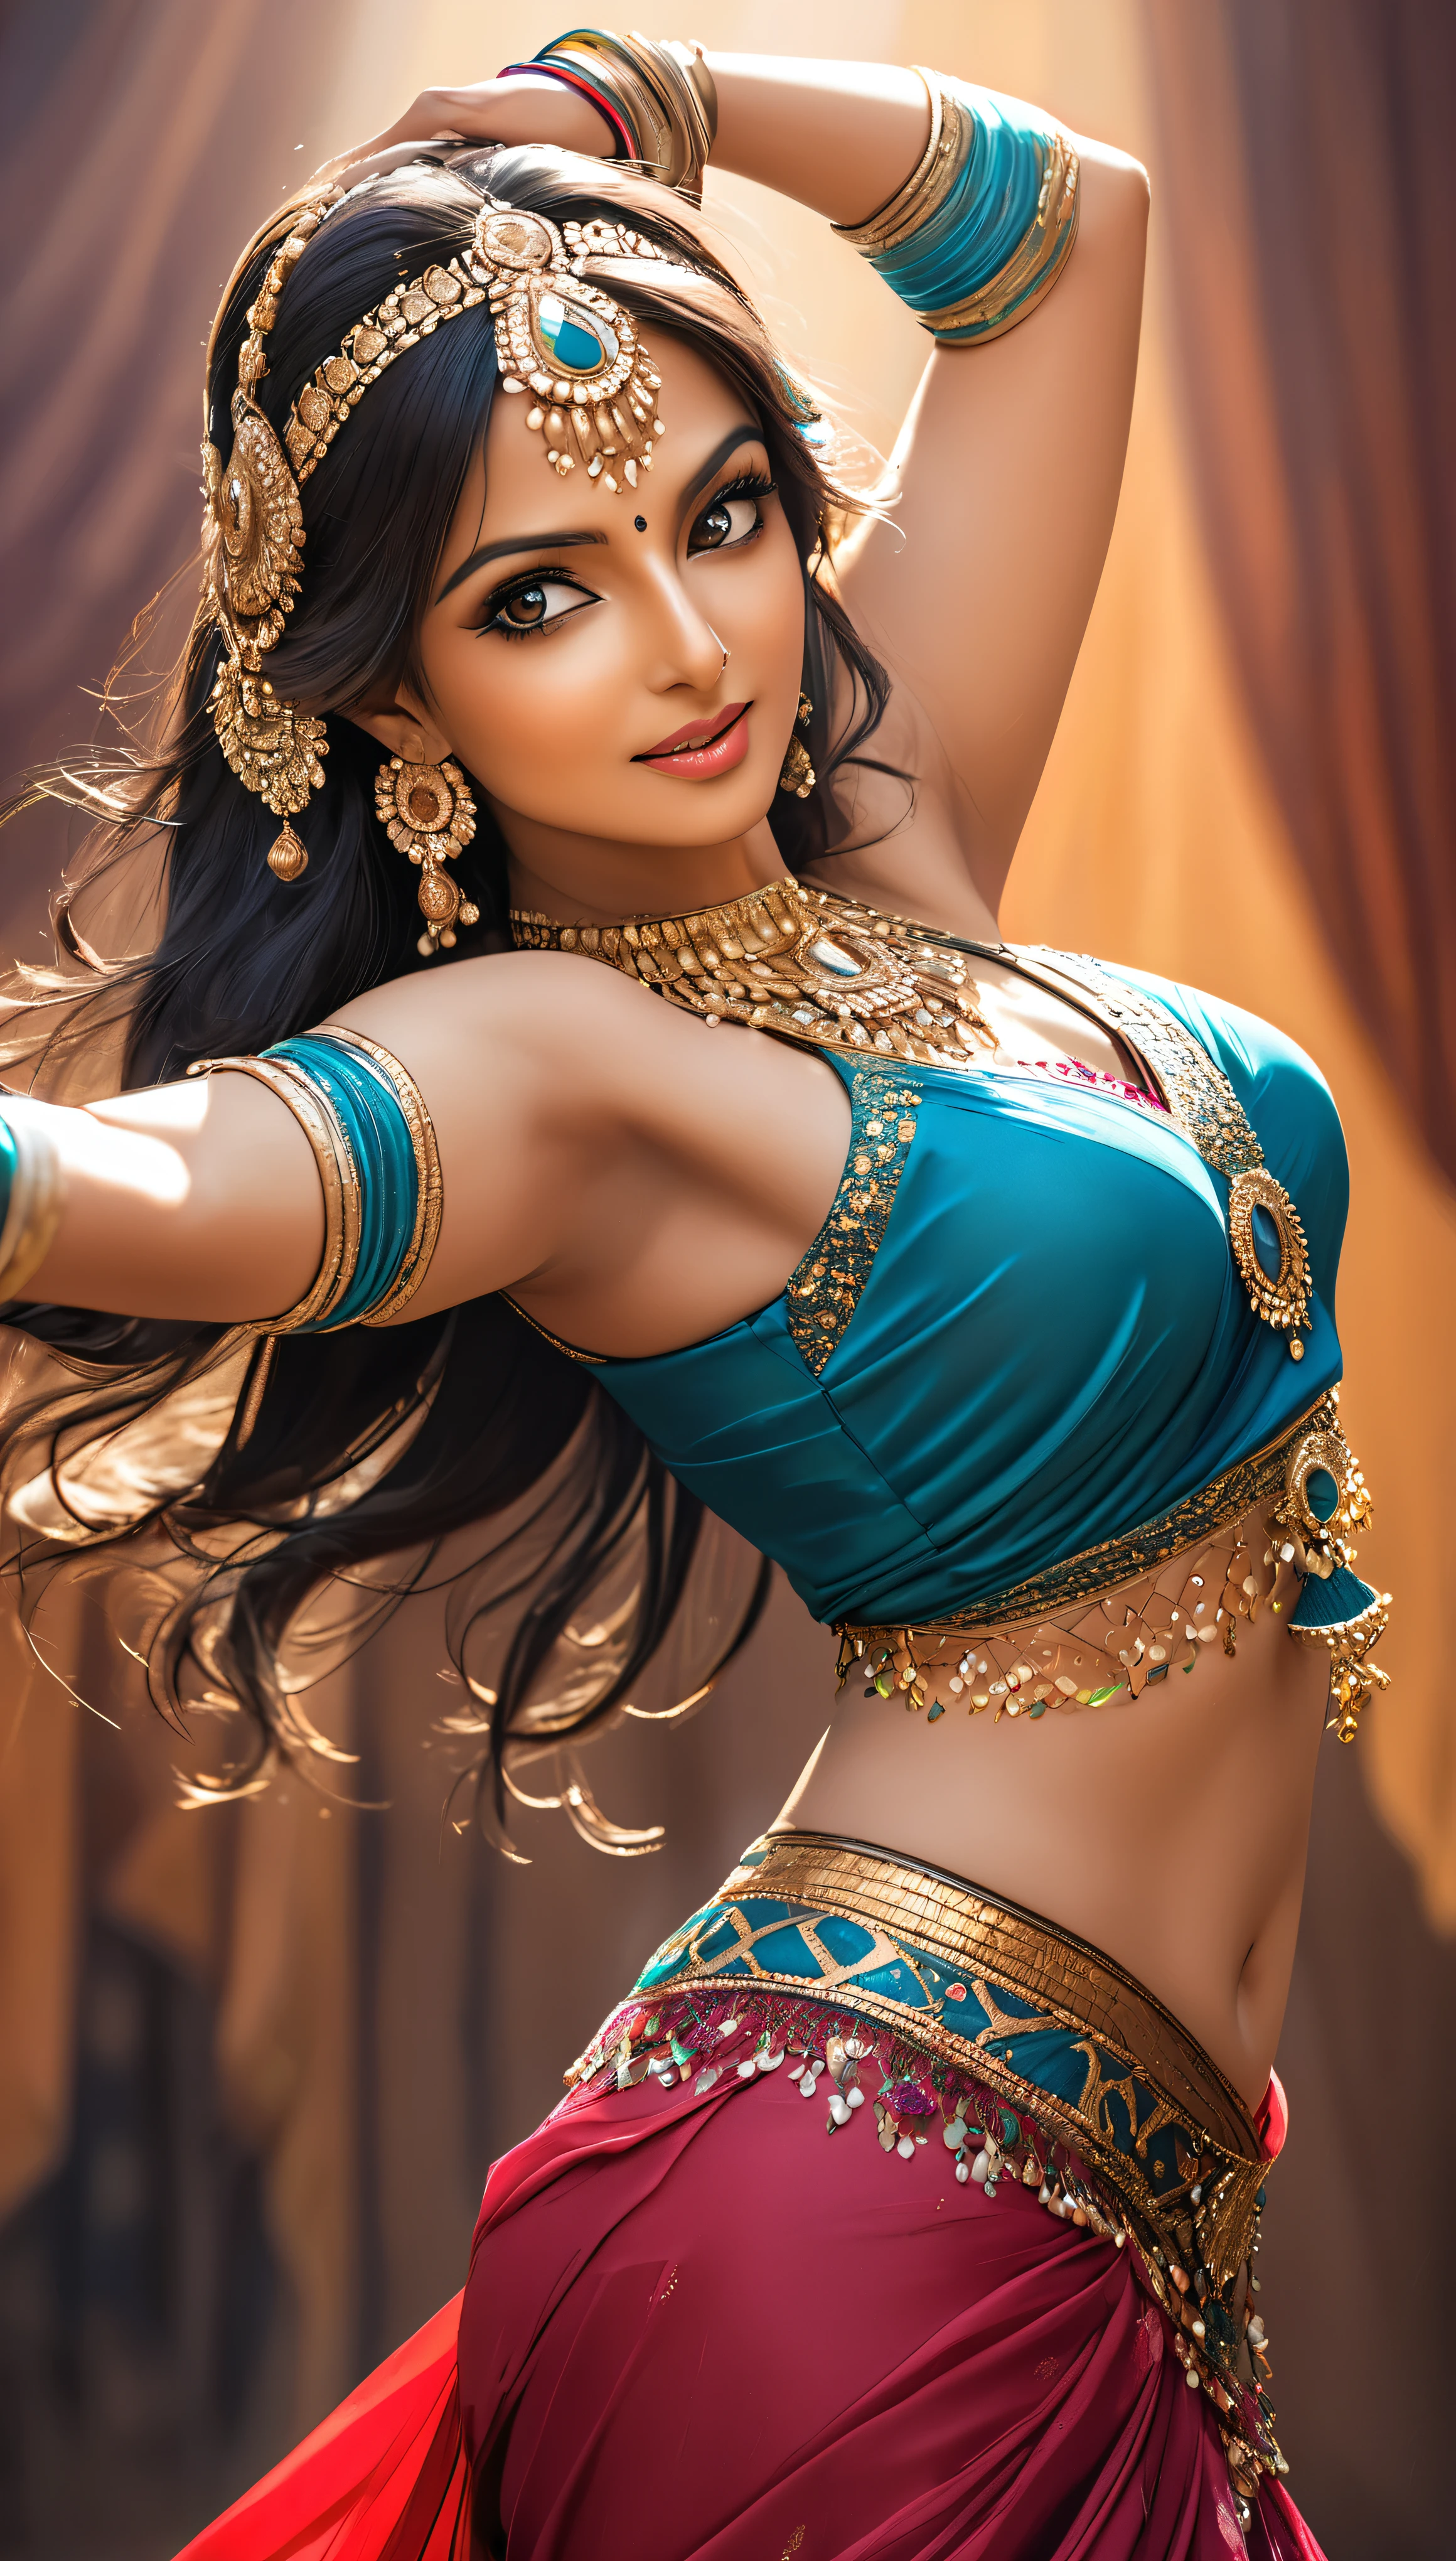 امرأة هندية ترقص رقص شرقي, شابة جذابة للغاية وناضجة, إنها تأسر الجمهور بملابسها الجذابة., صورة منقار, ملمس جلدي مفصل ولامع, 